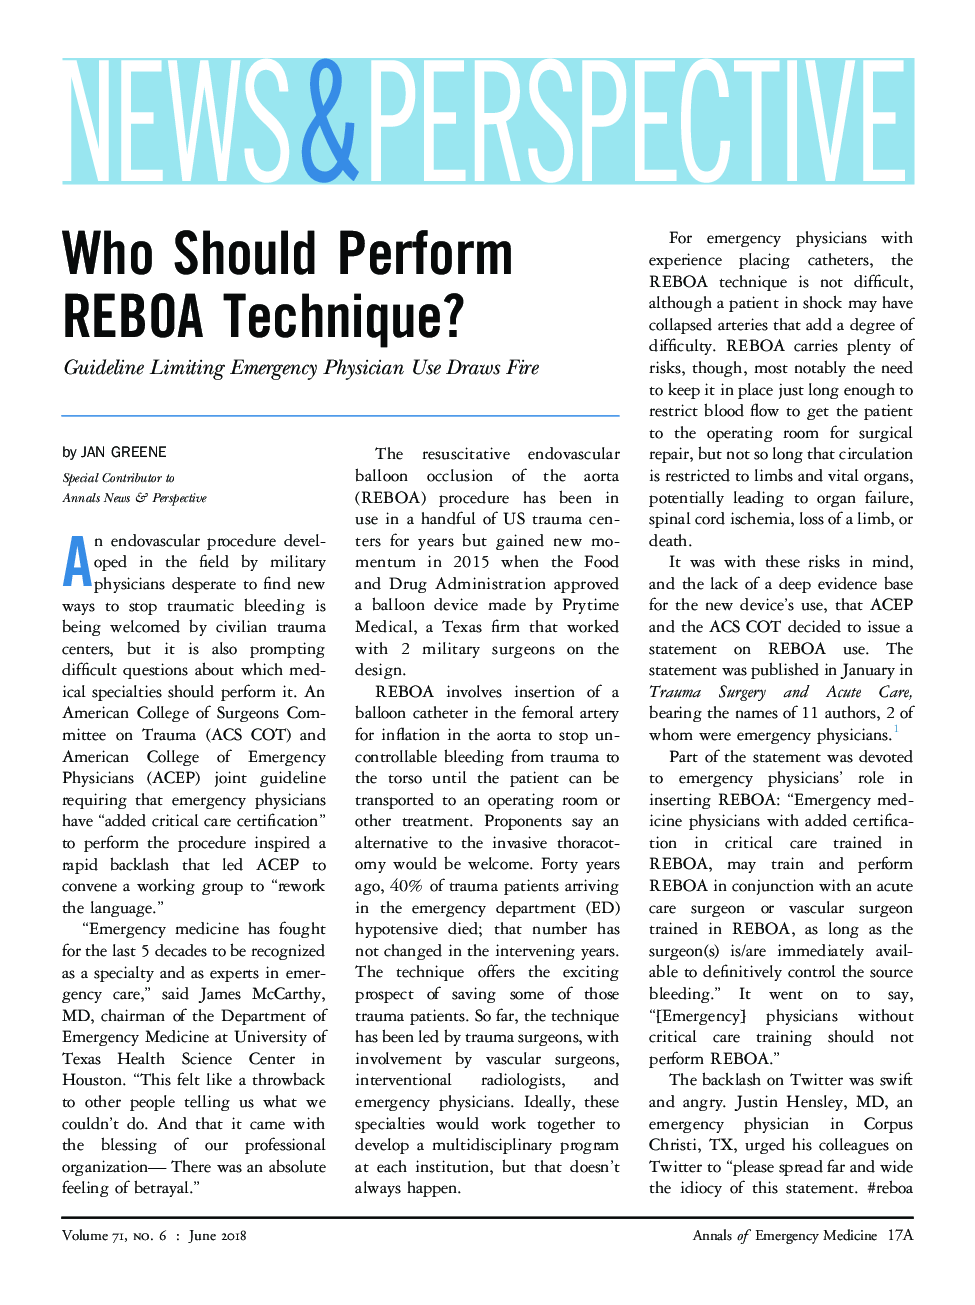 Who Should Perform REBOA Technique?